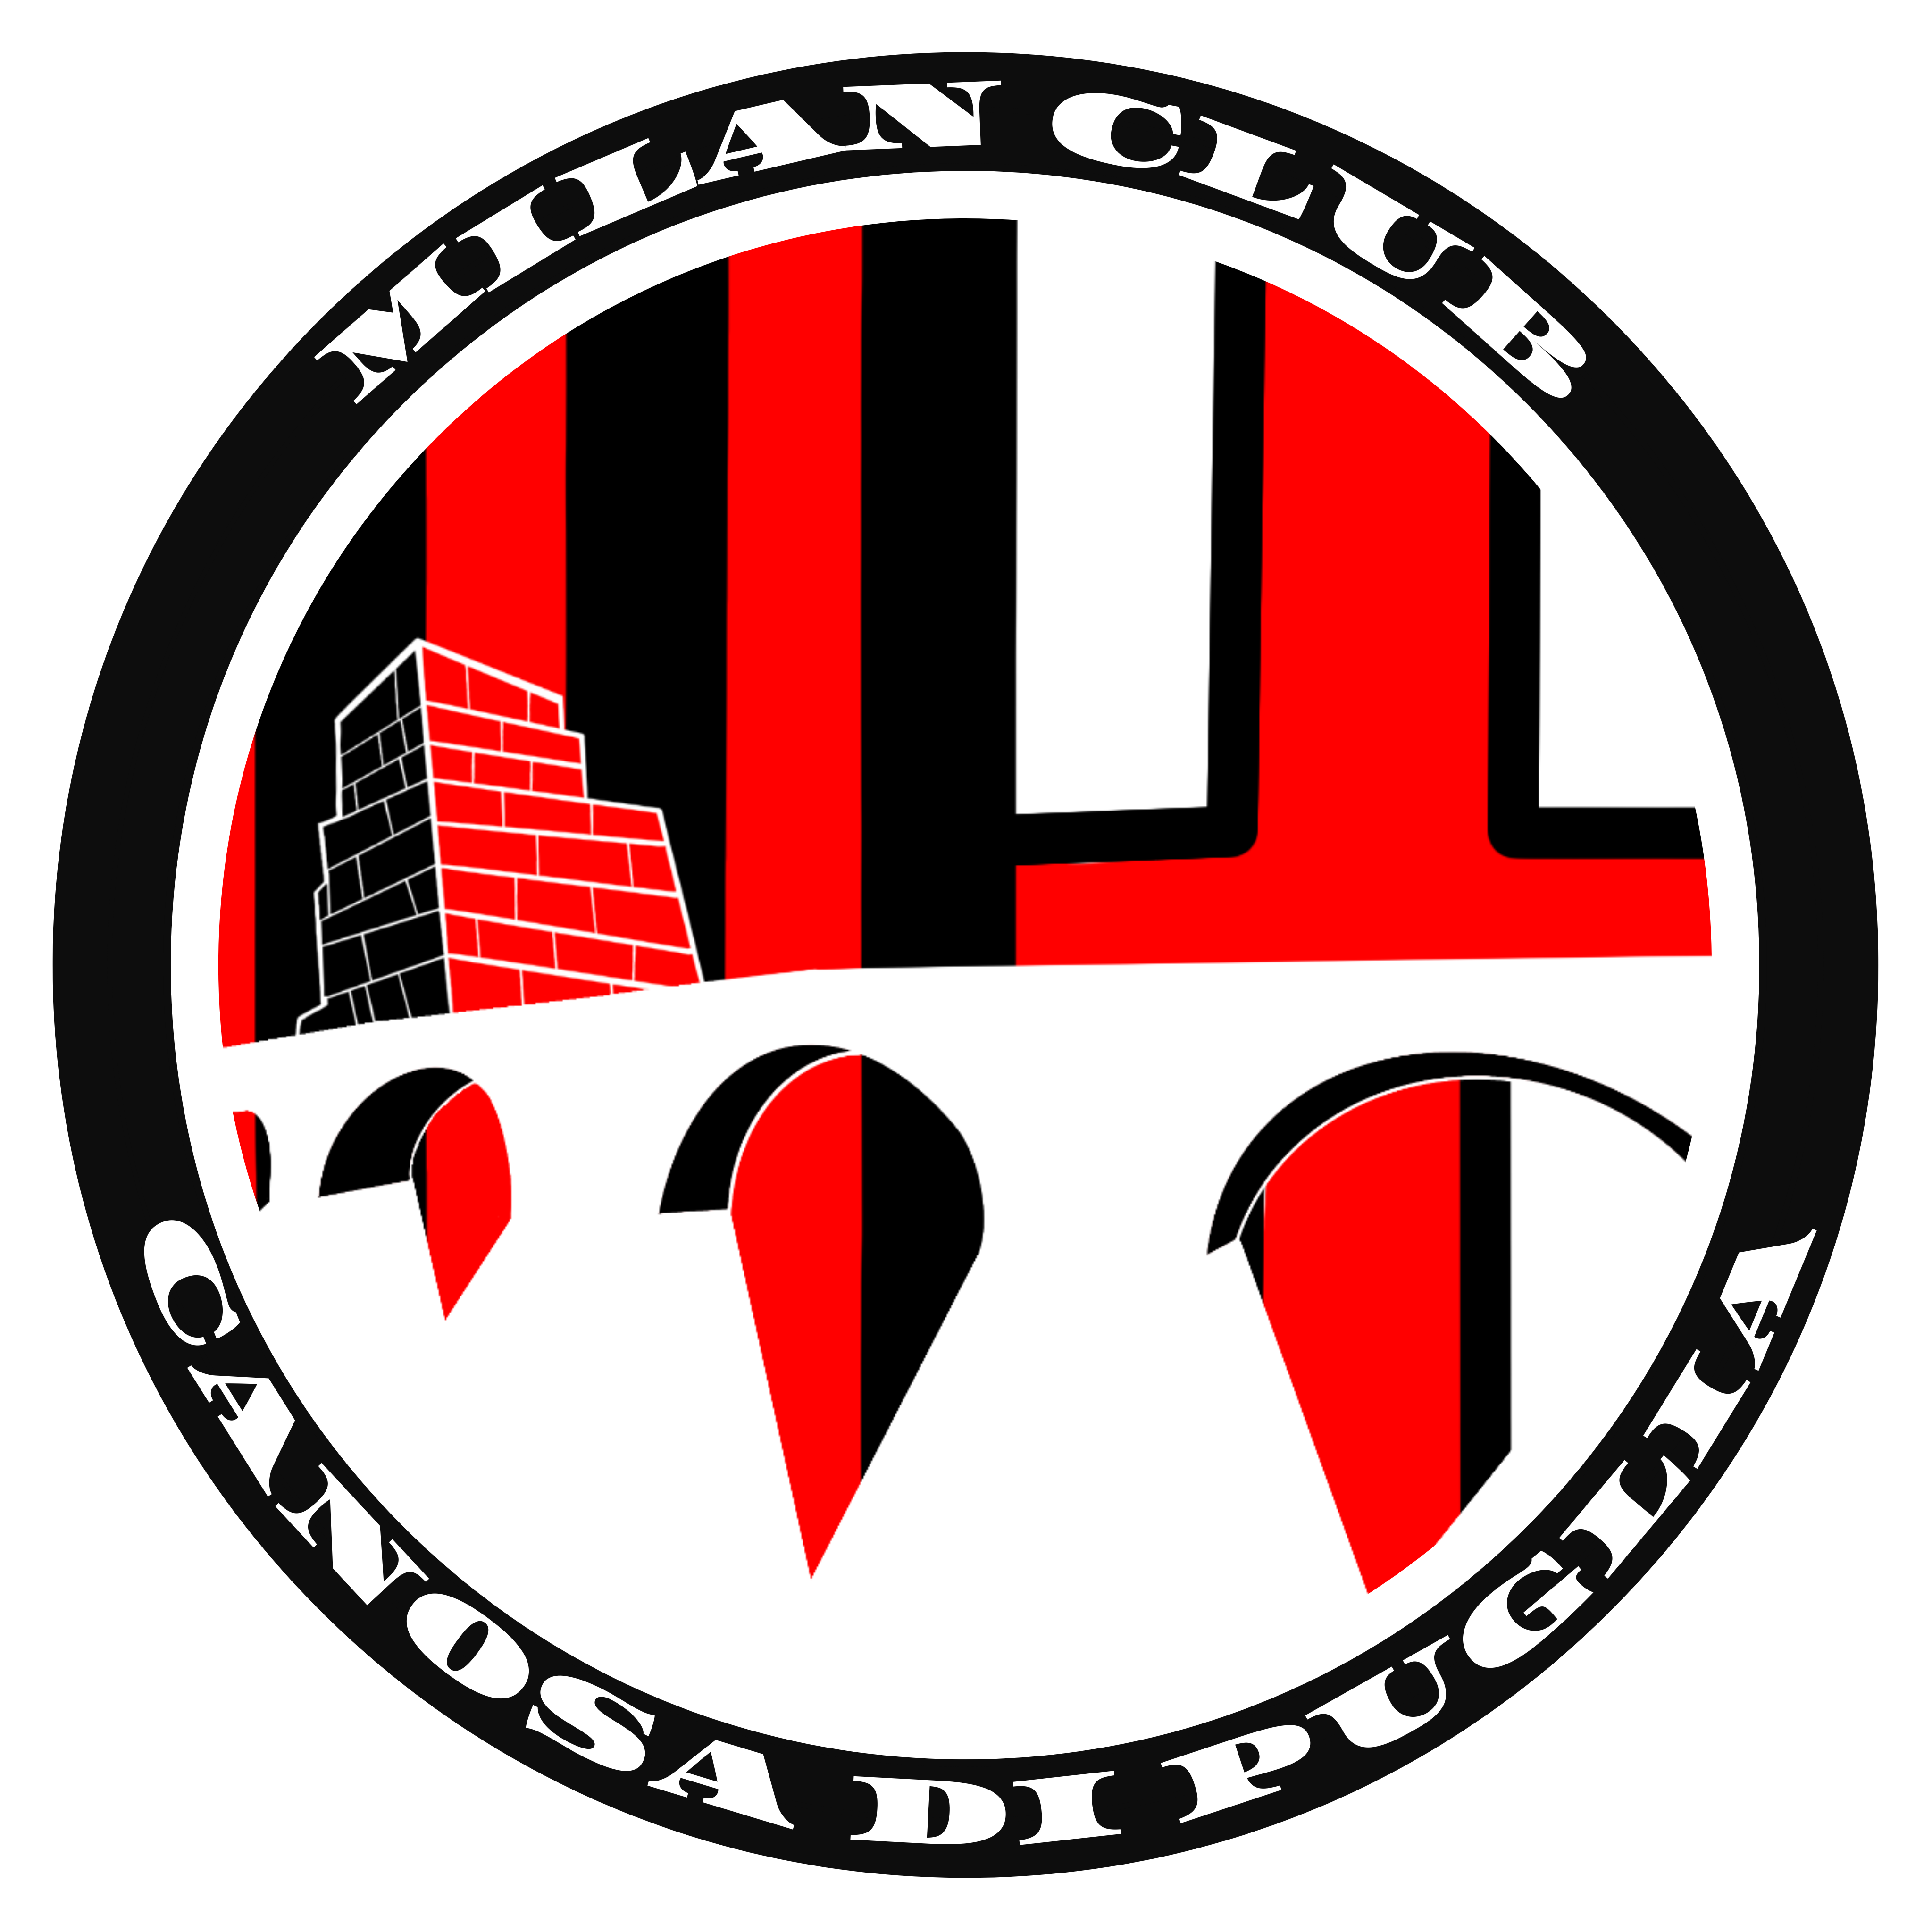 Milan Club Canosa di Puglia